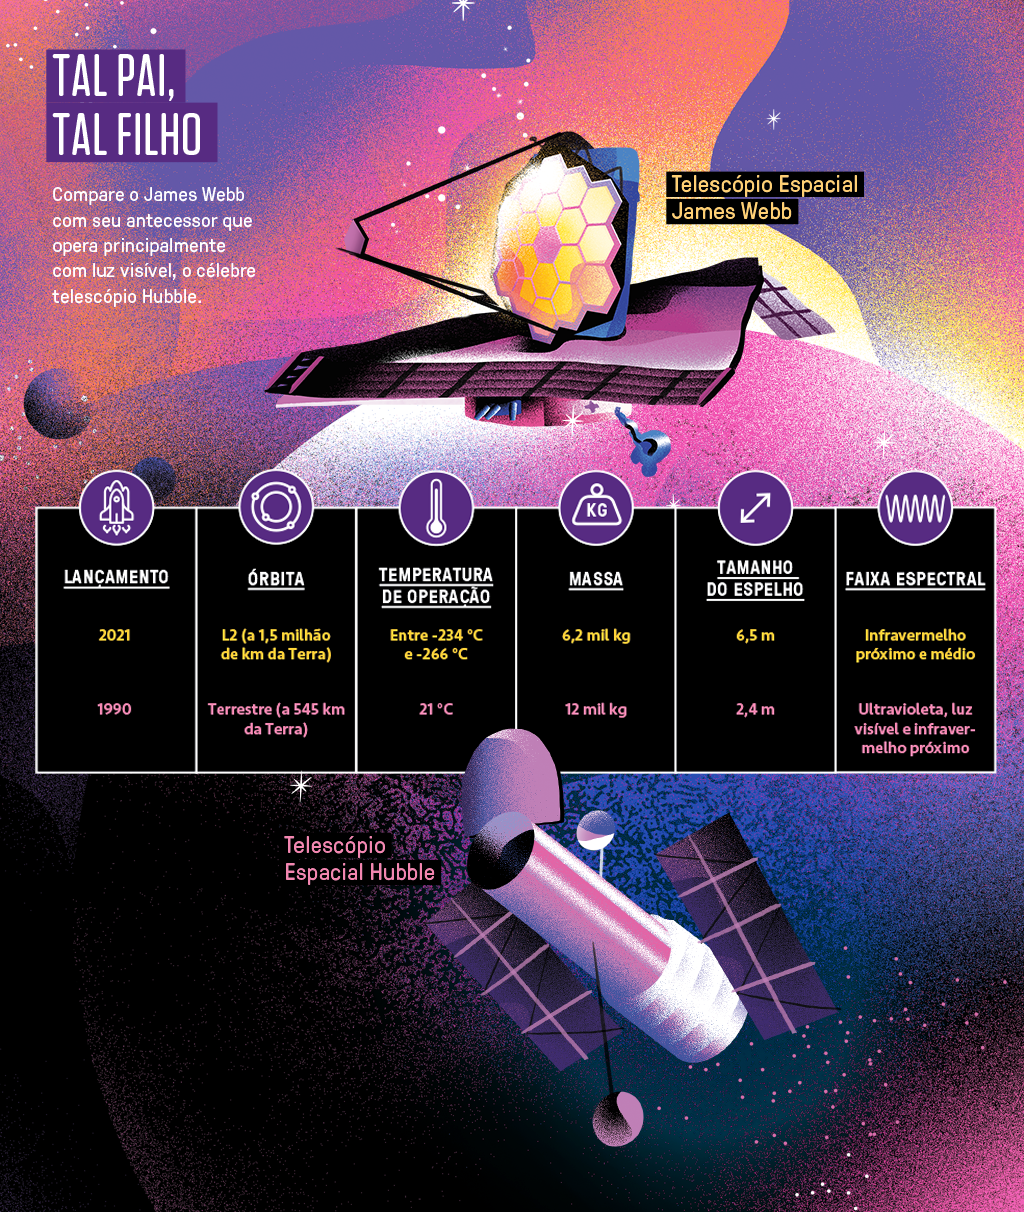 Ilustração dos telescópios James Webb e Hubble e legendas com comparações entre os dois.